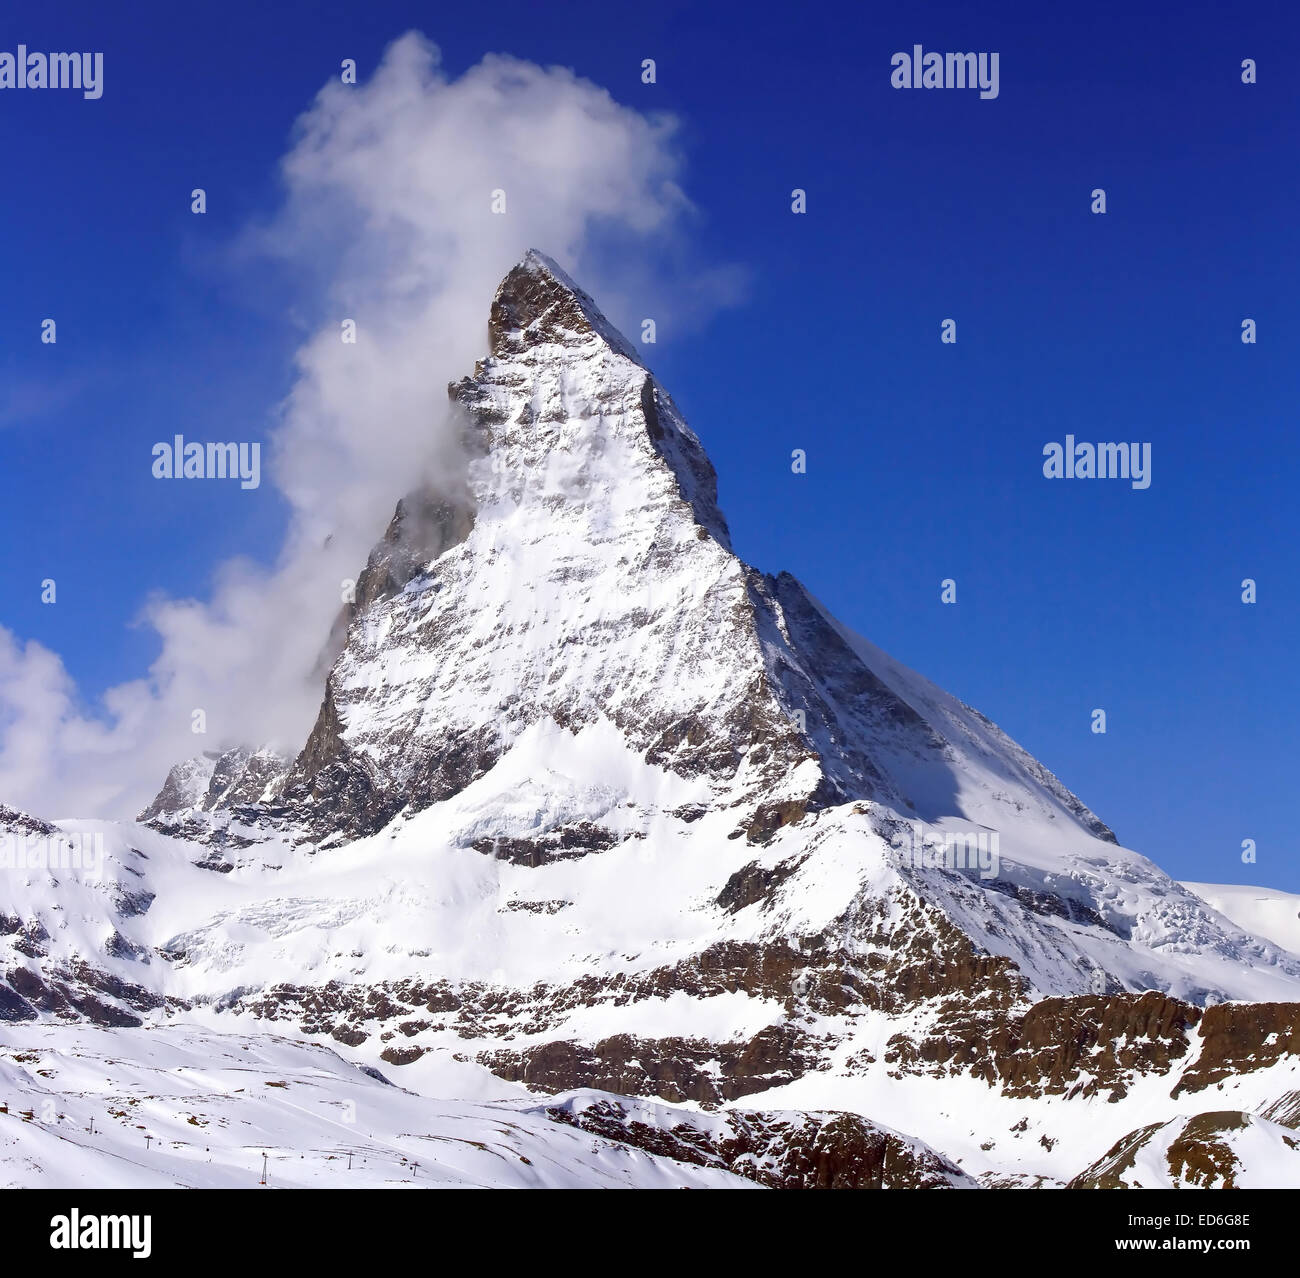 Matterhorn, le logo de chocolat Toblerone, situé en Suisse Photo Stock -  Alamy